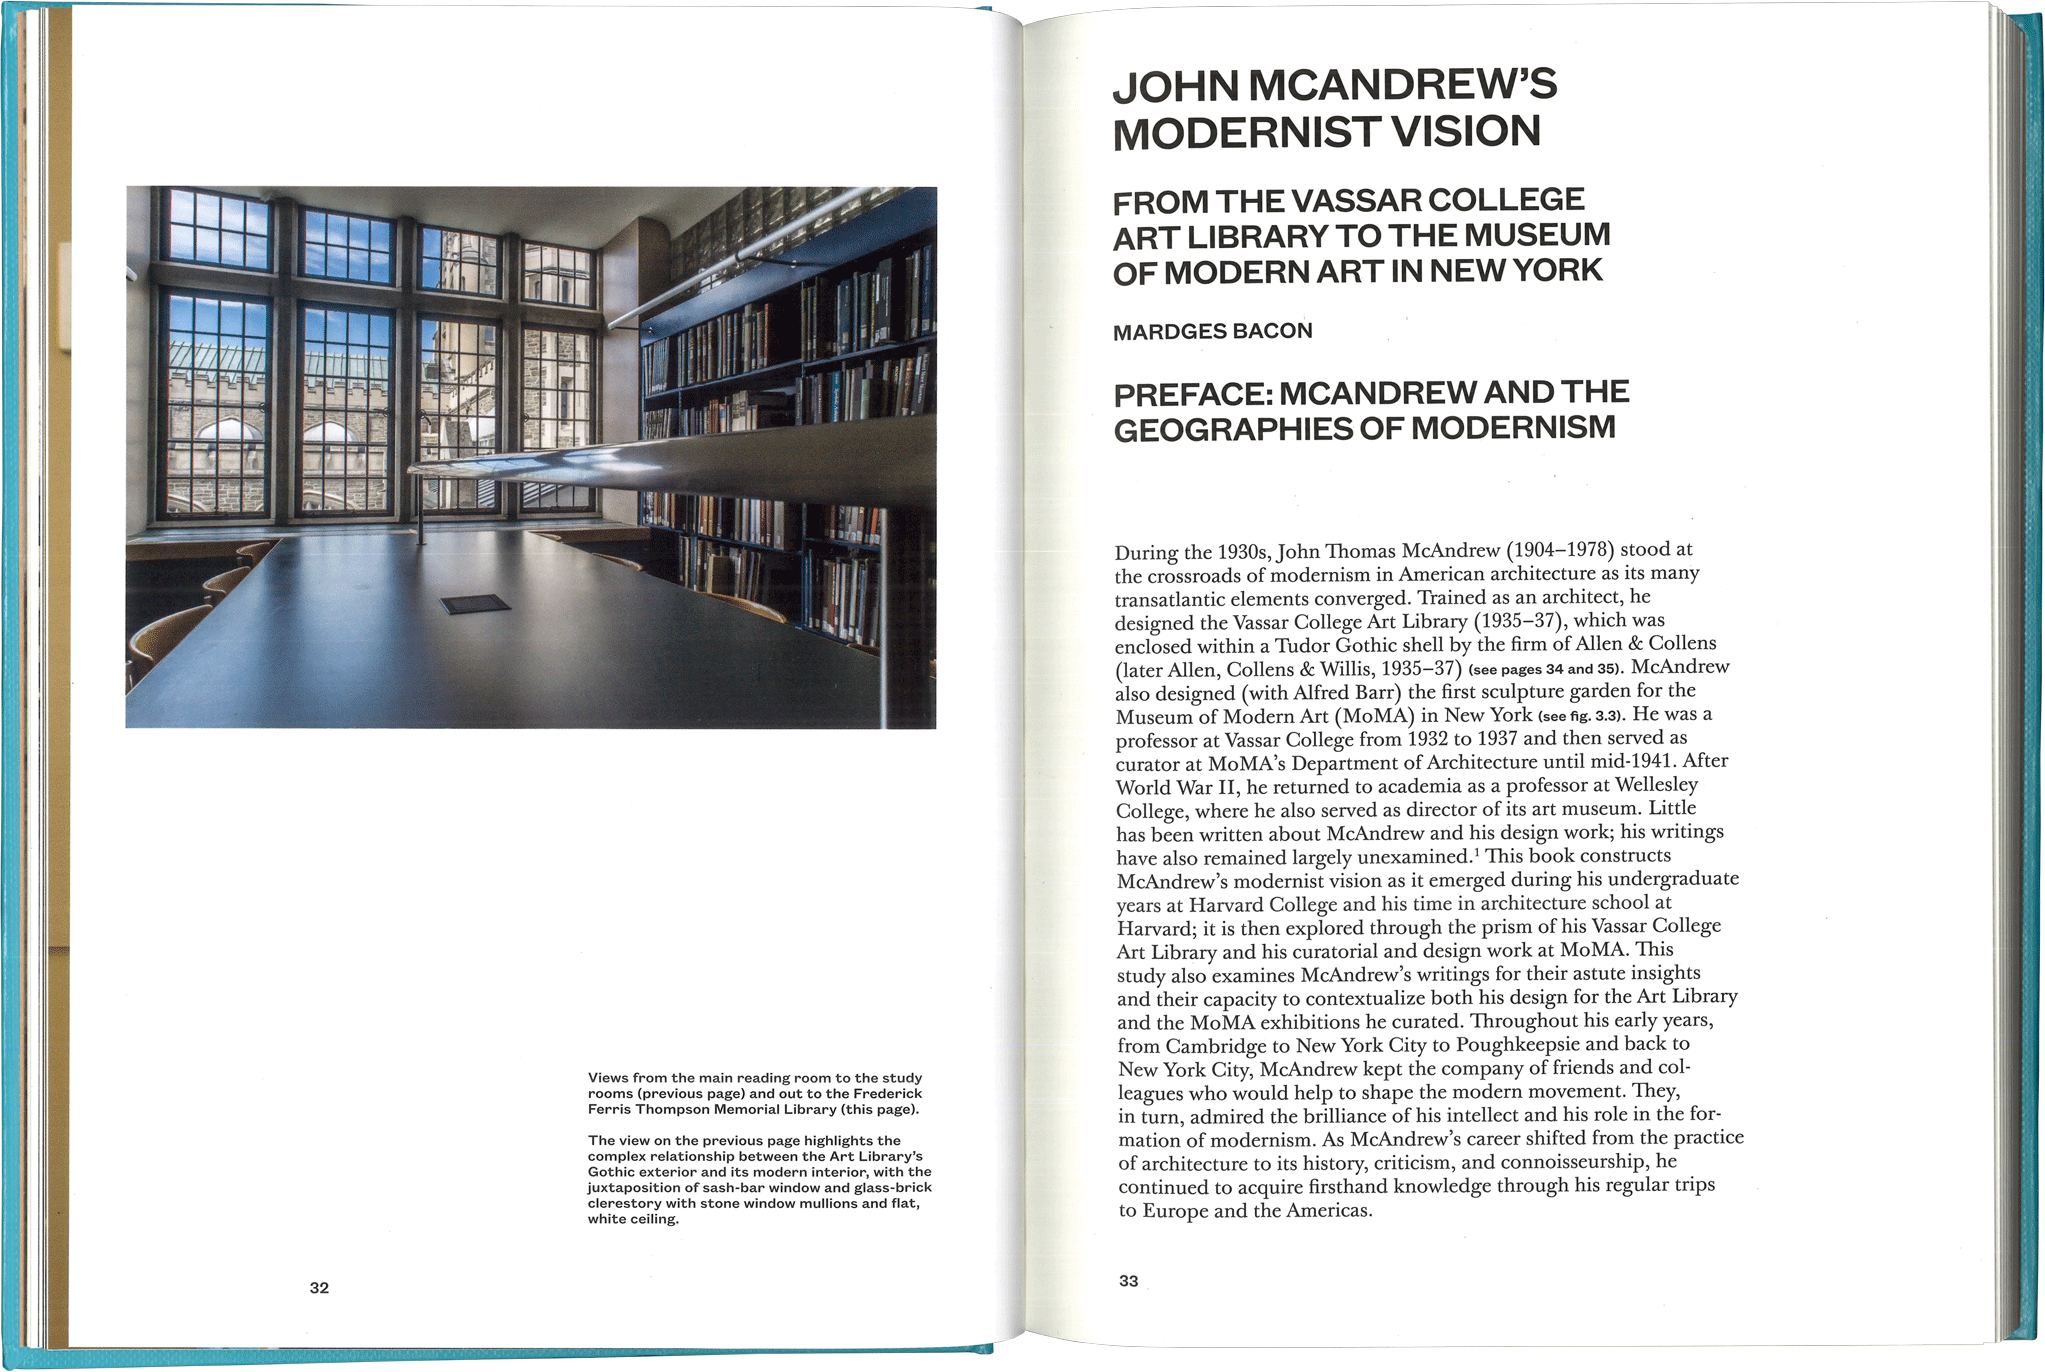 John McAndrew’s Modernist Vision spread